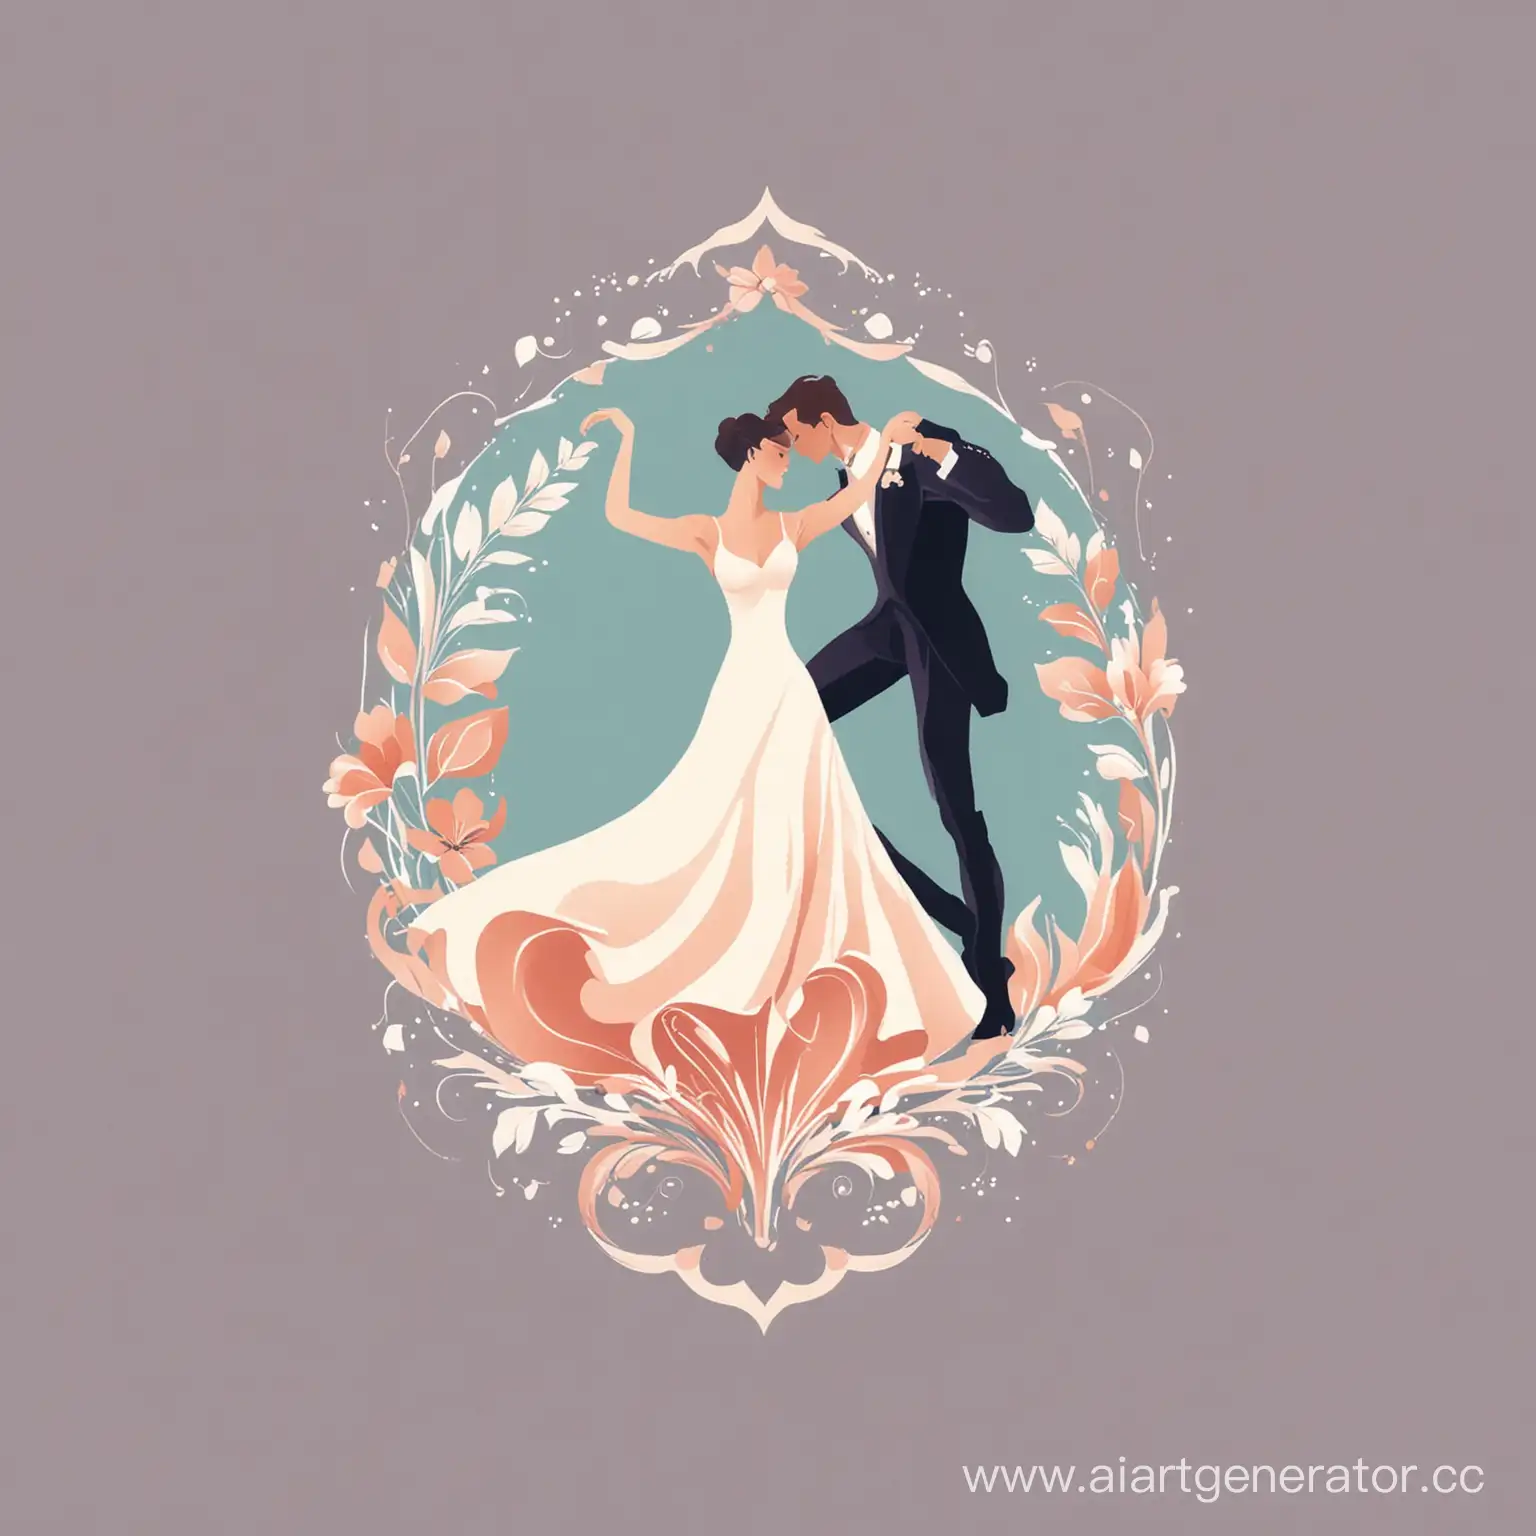 Женщина и мужчина танцуют бальные танцы логотип минимализм нежные цвета цветы